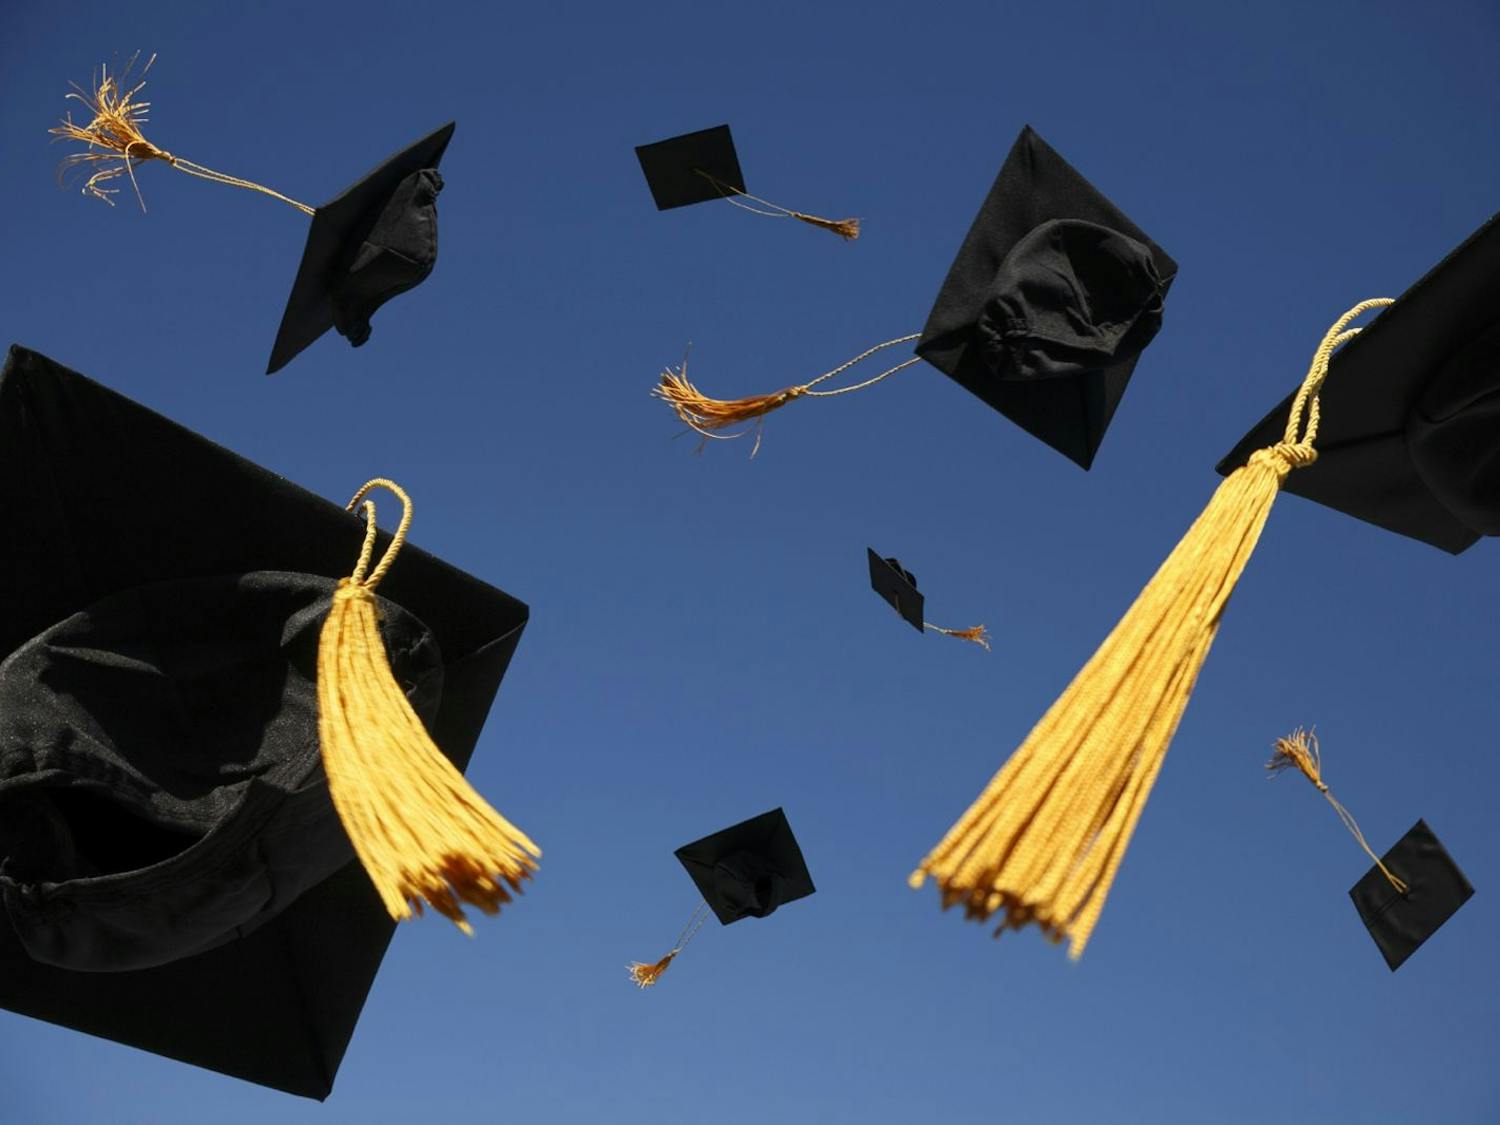 graduation-caps-thrown-in-air.jpg